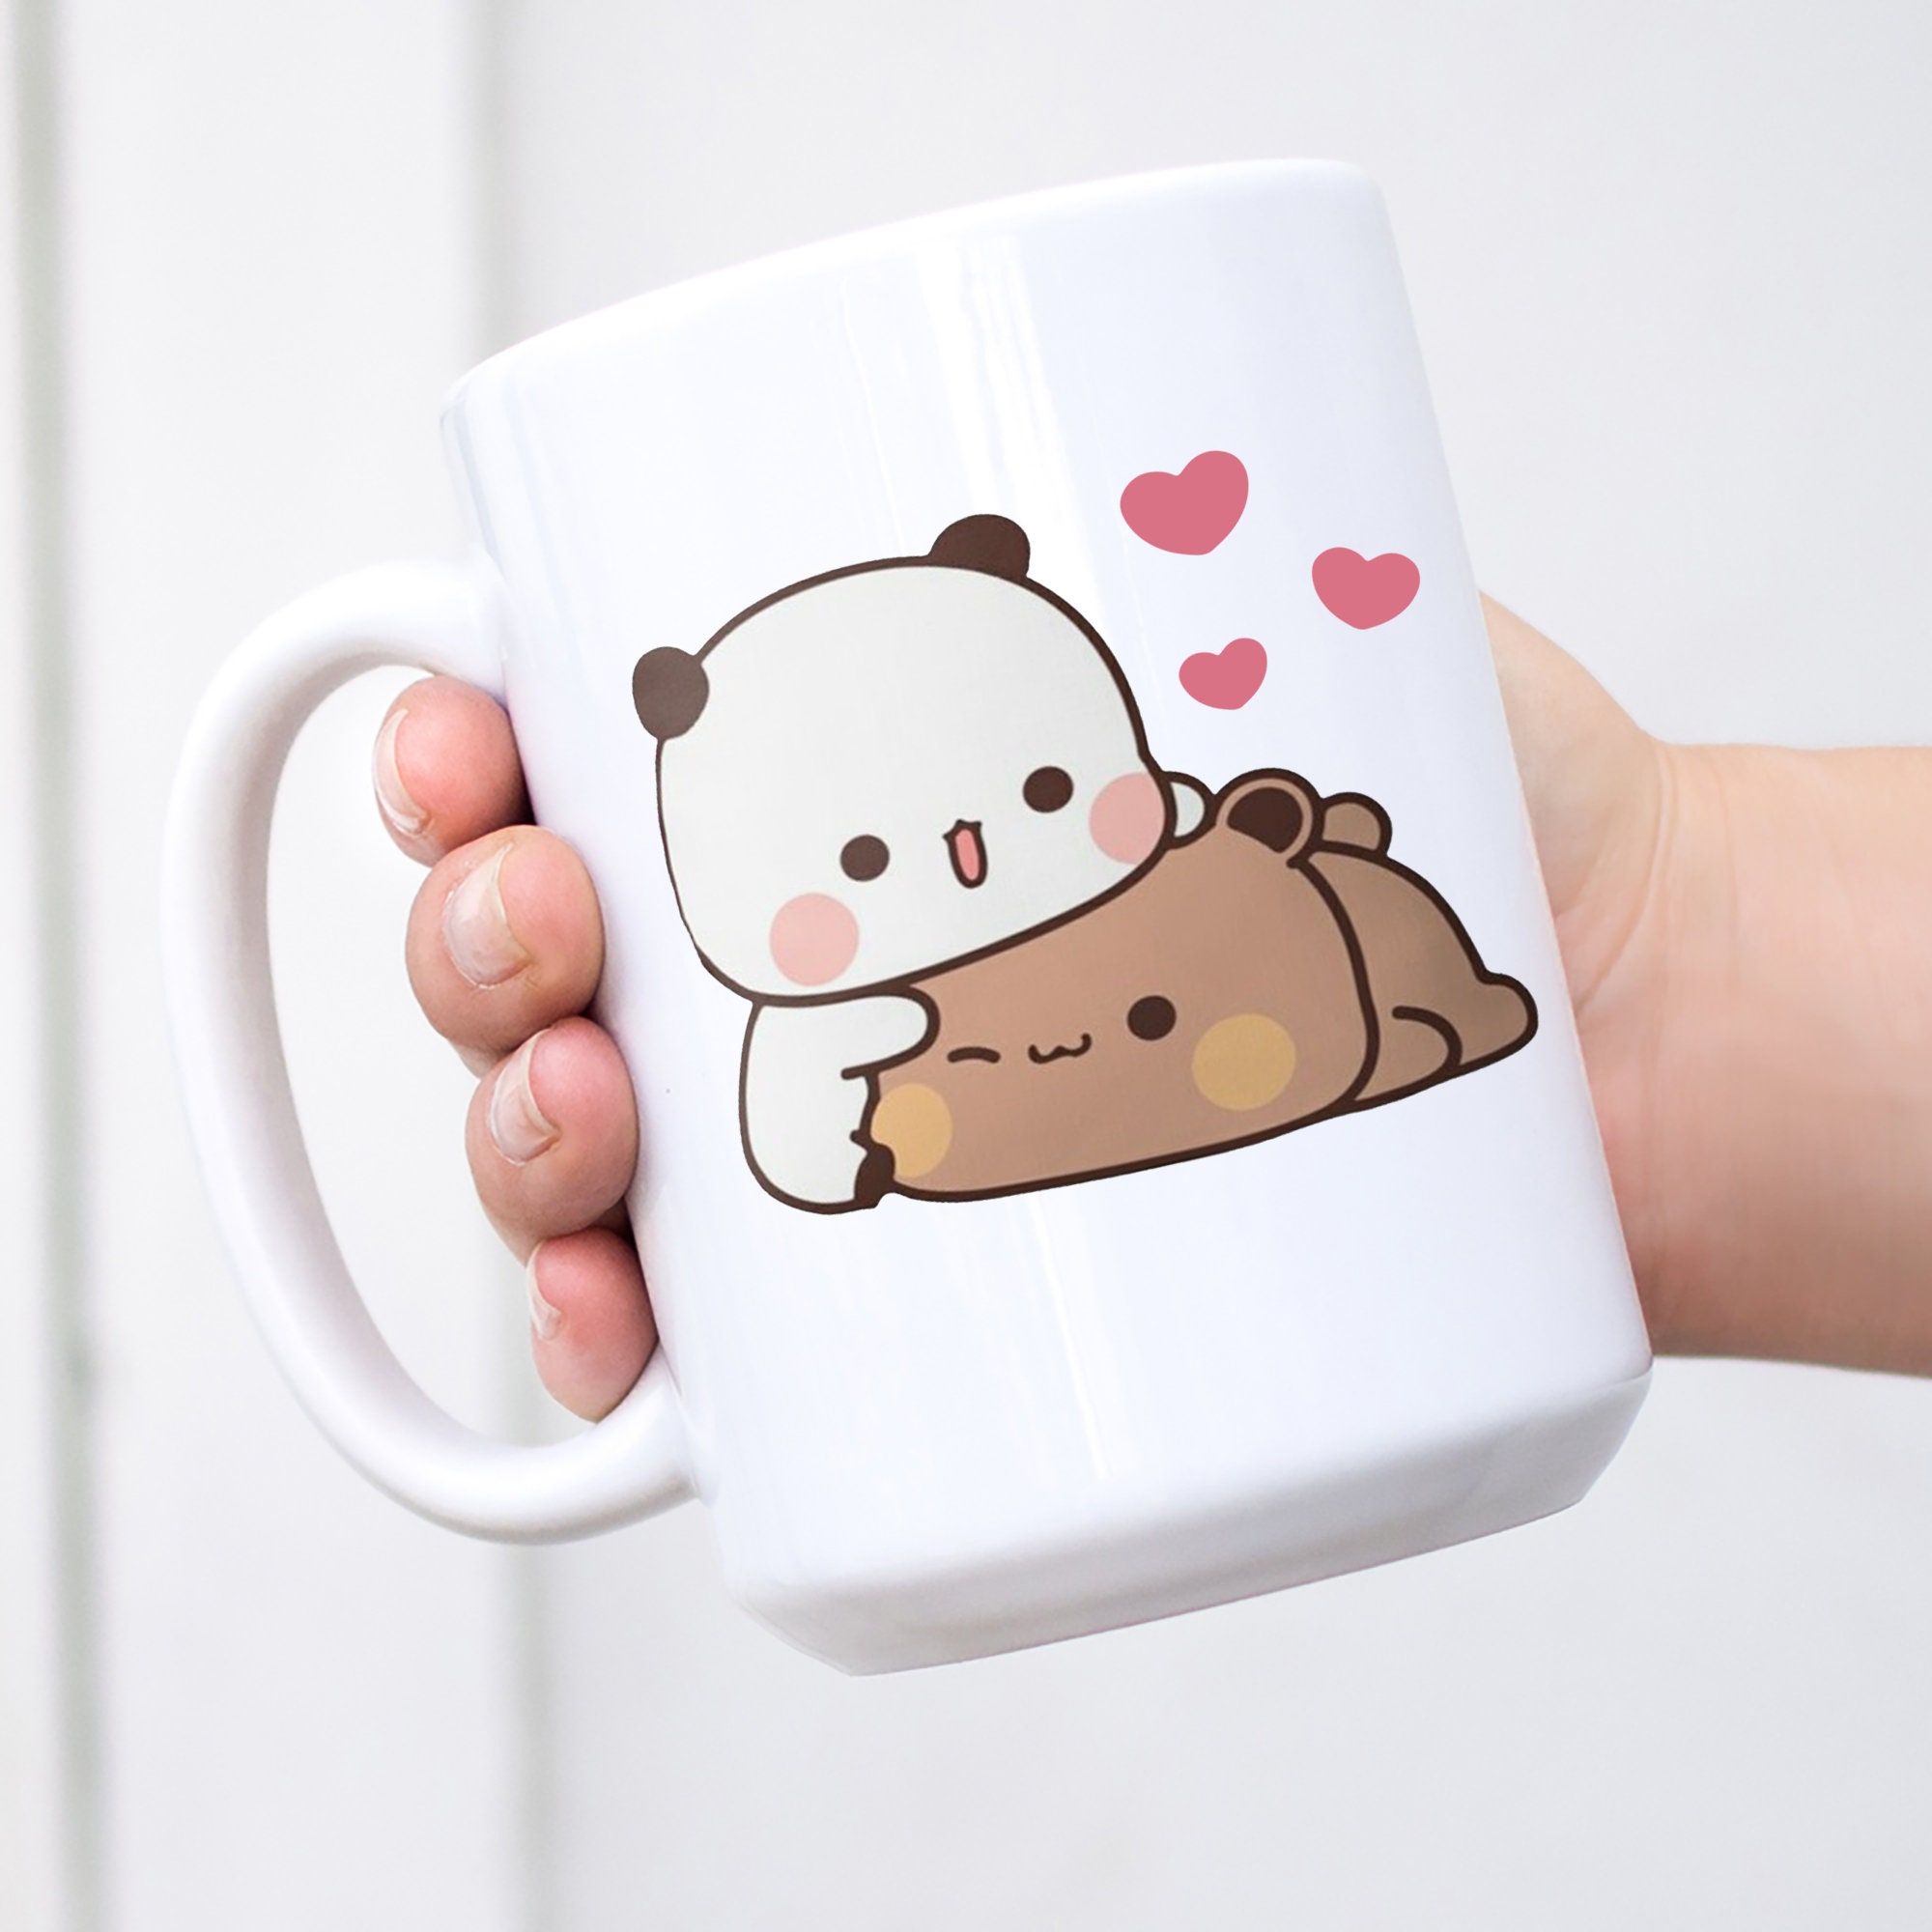 Panda Coffee Cup, Panda Face, Panda Bear Mug, Panda Lover, Bear